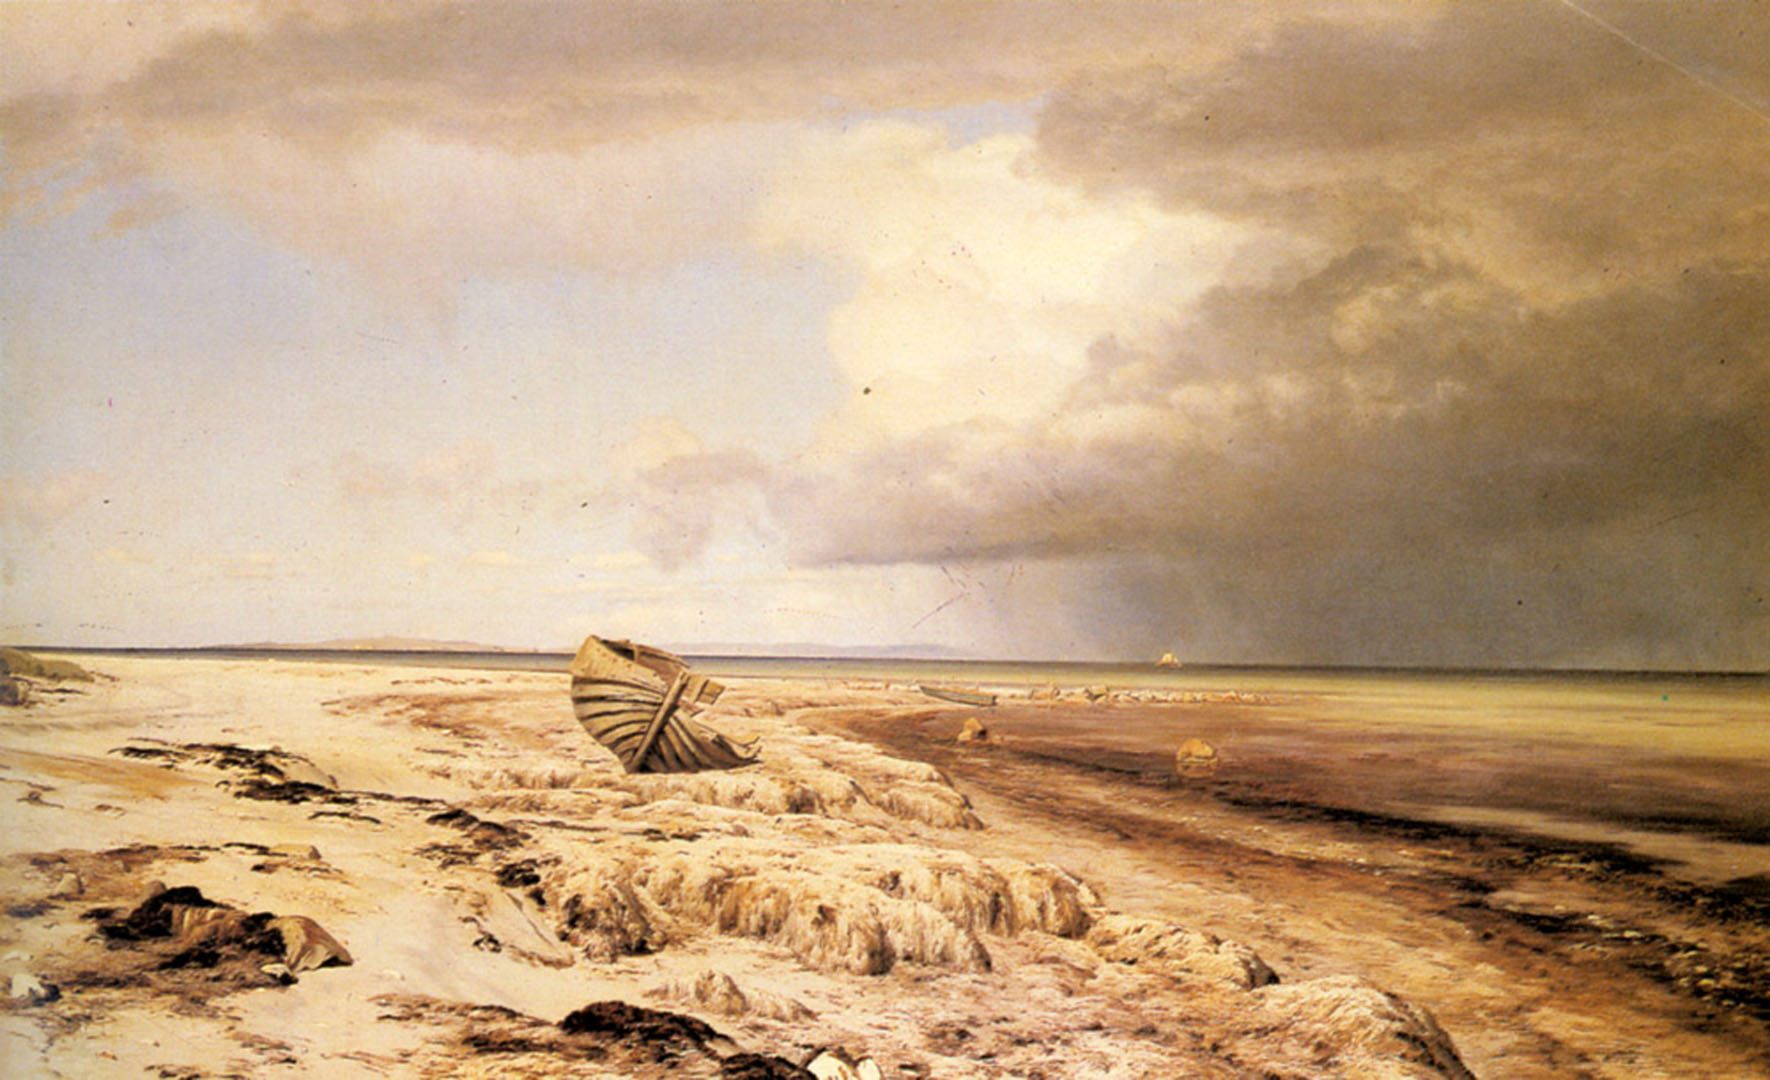 Deserted Boat On A Beach Danish Art Wallpaper Image